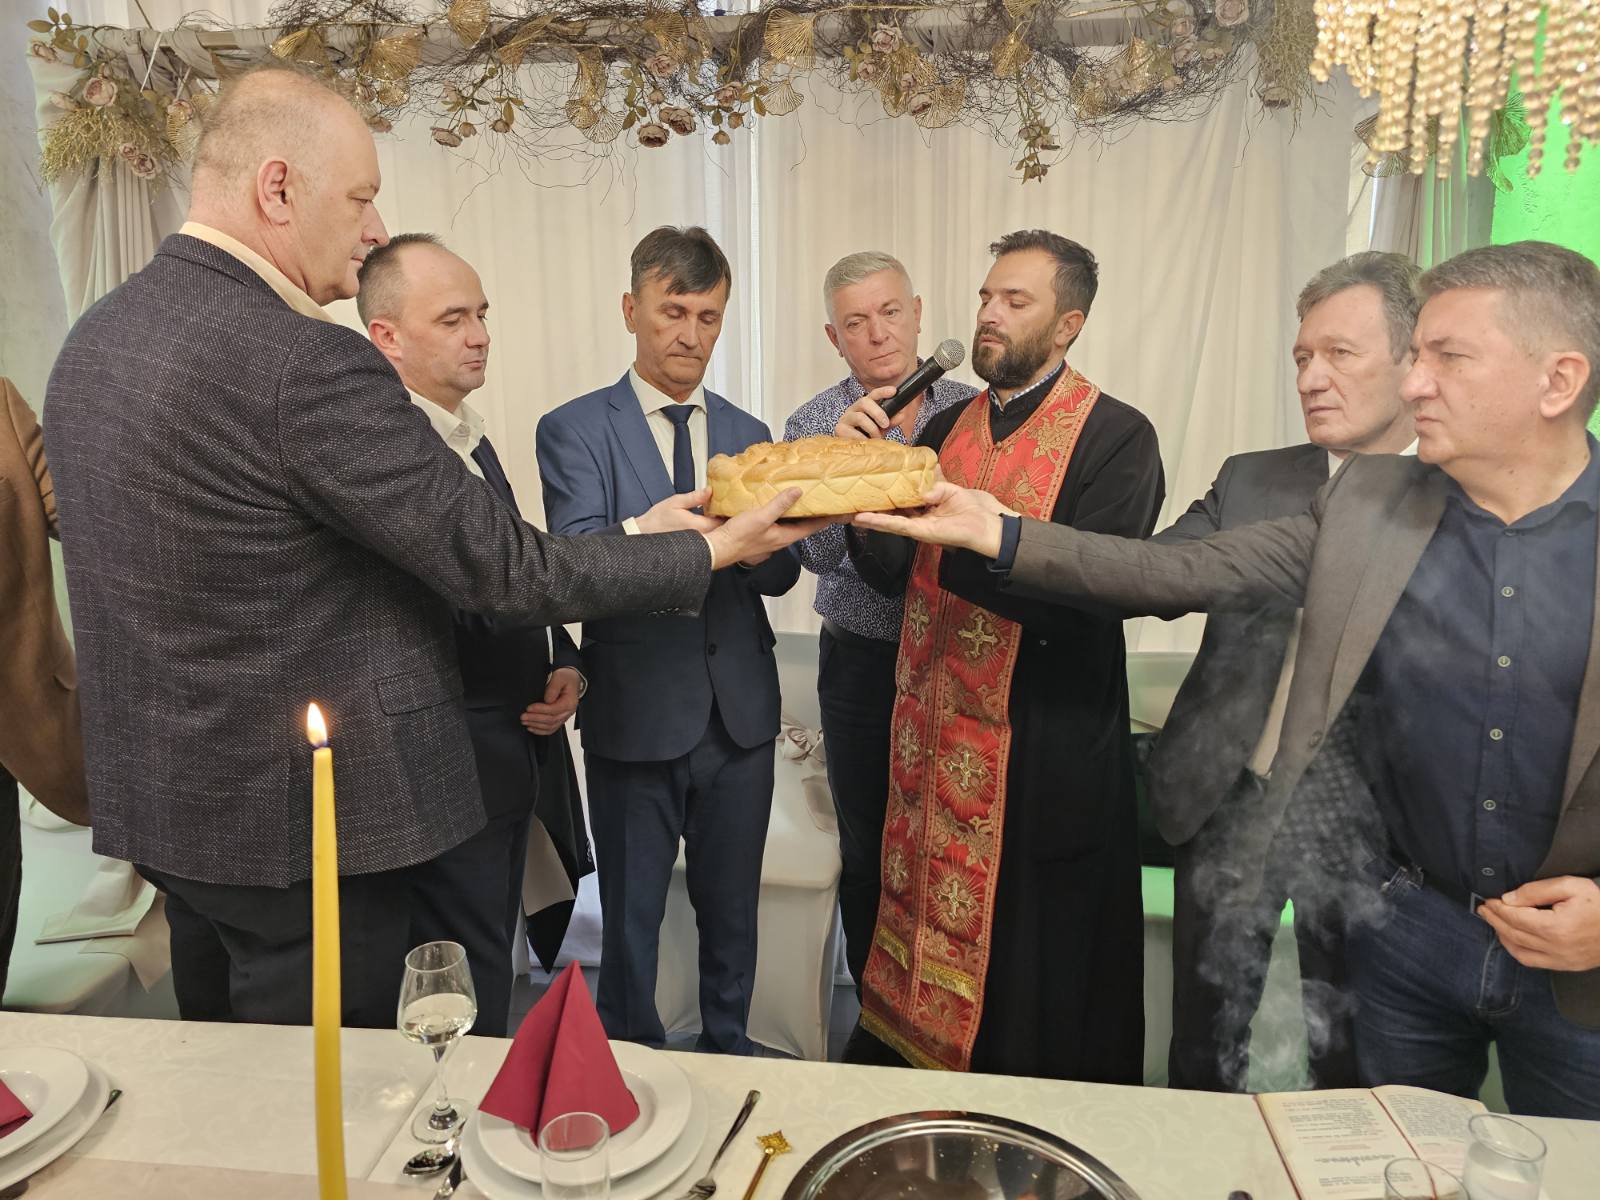 Boračka organizacija Ugljevika proslavila krsnu slavu Mitrovdan: Sjećanje na poginule borce